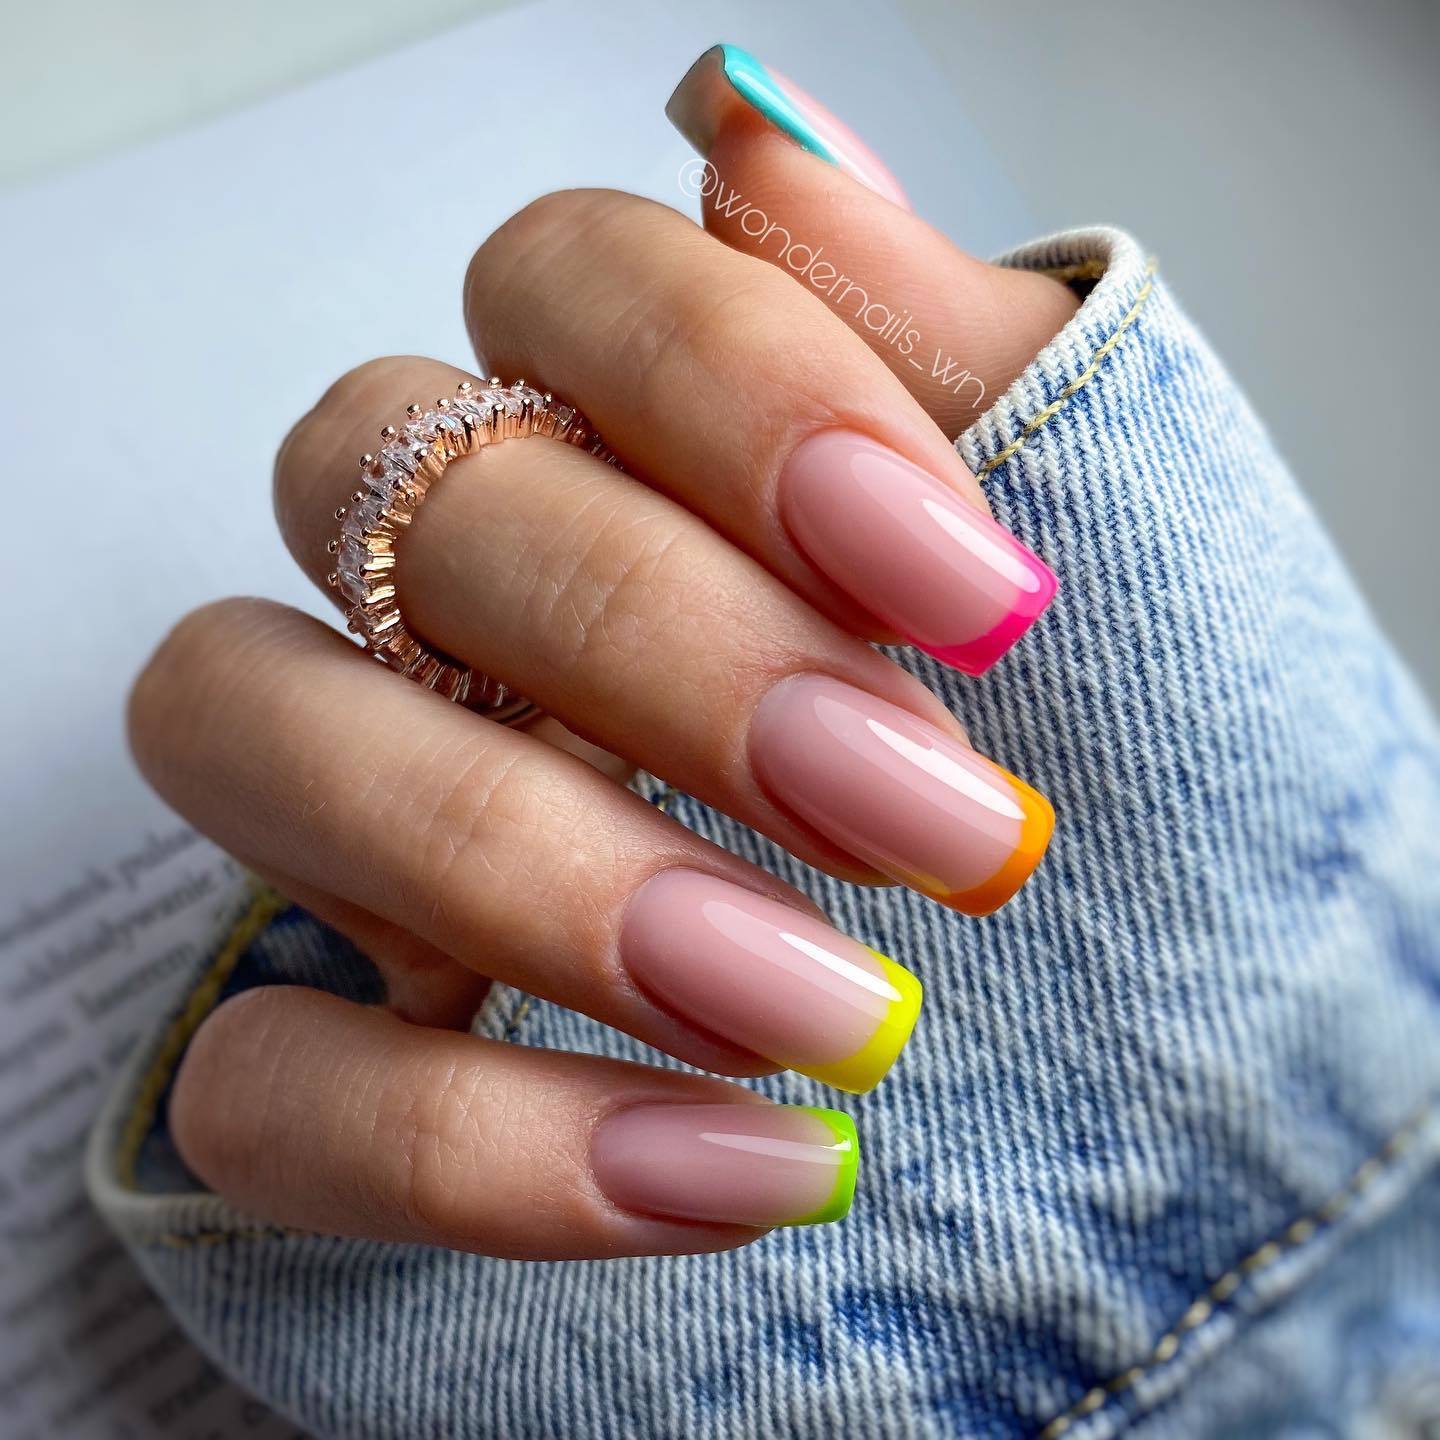 Entre el minimalismo multicolor y la manicura francesa así son las uñas  que triunfan este verano  Belleza Lo último  S Moda EL PAÍS